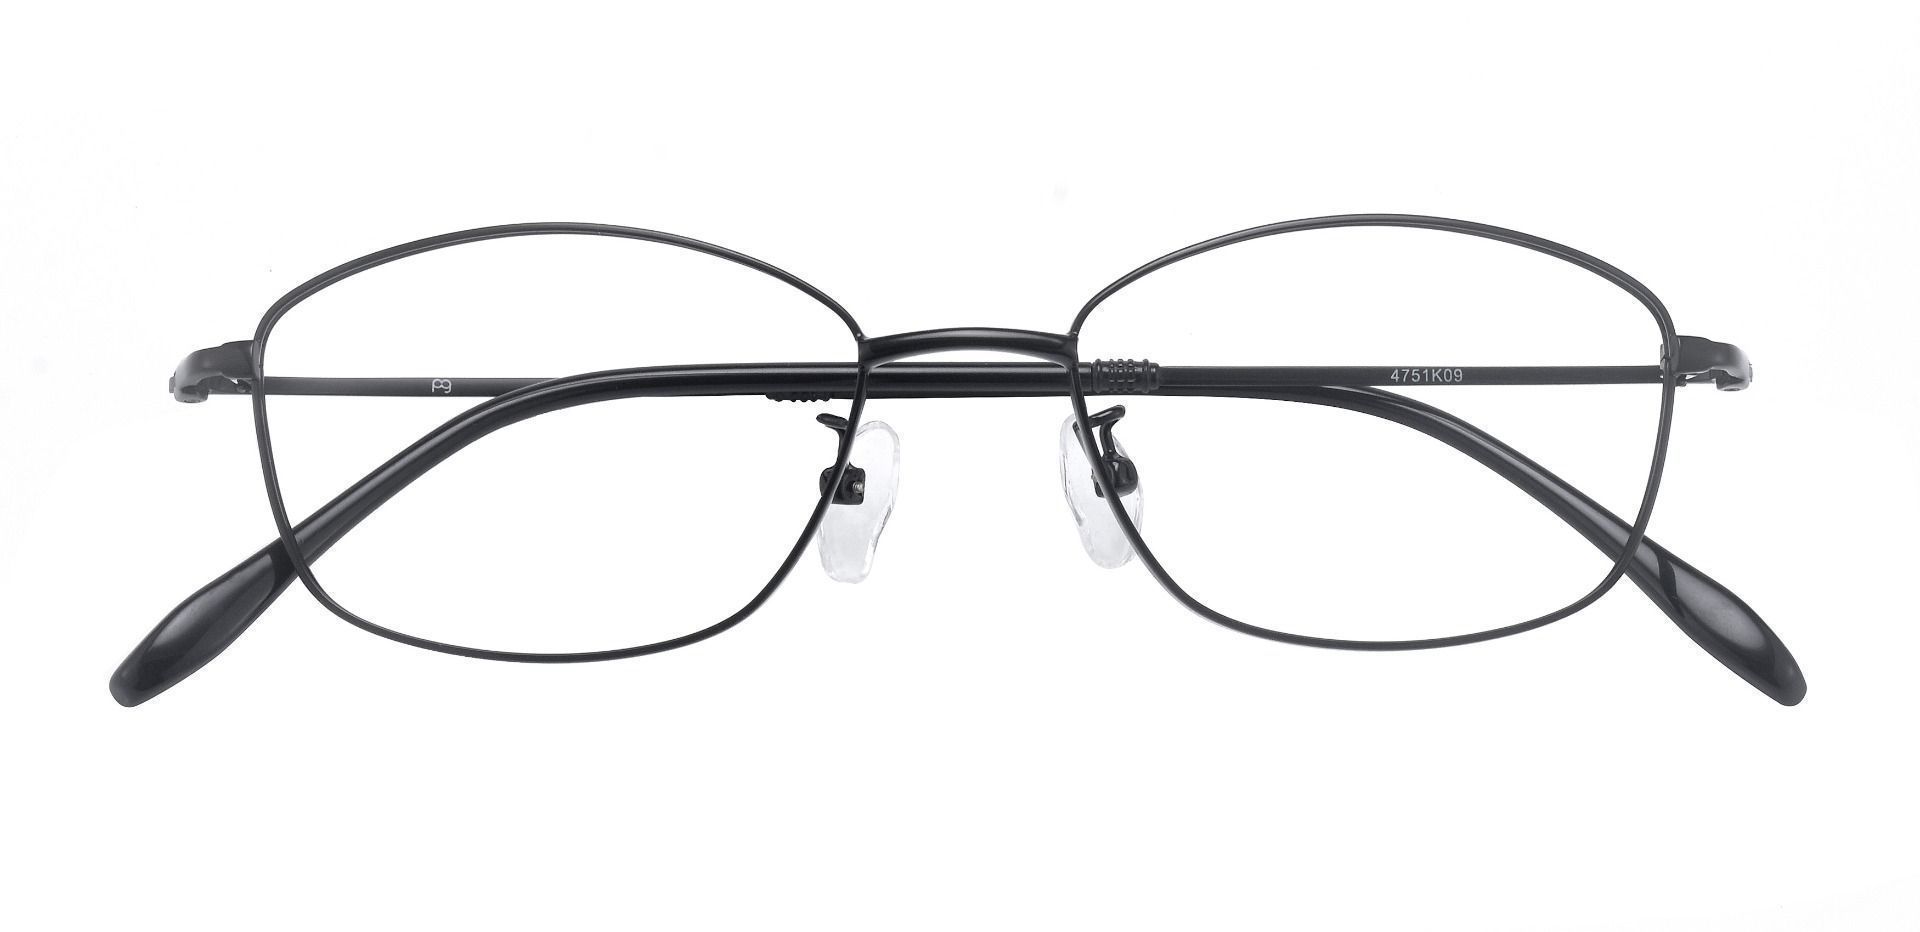 Cortland Oval Prescription Glasses - Black